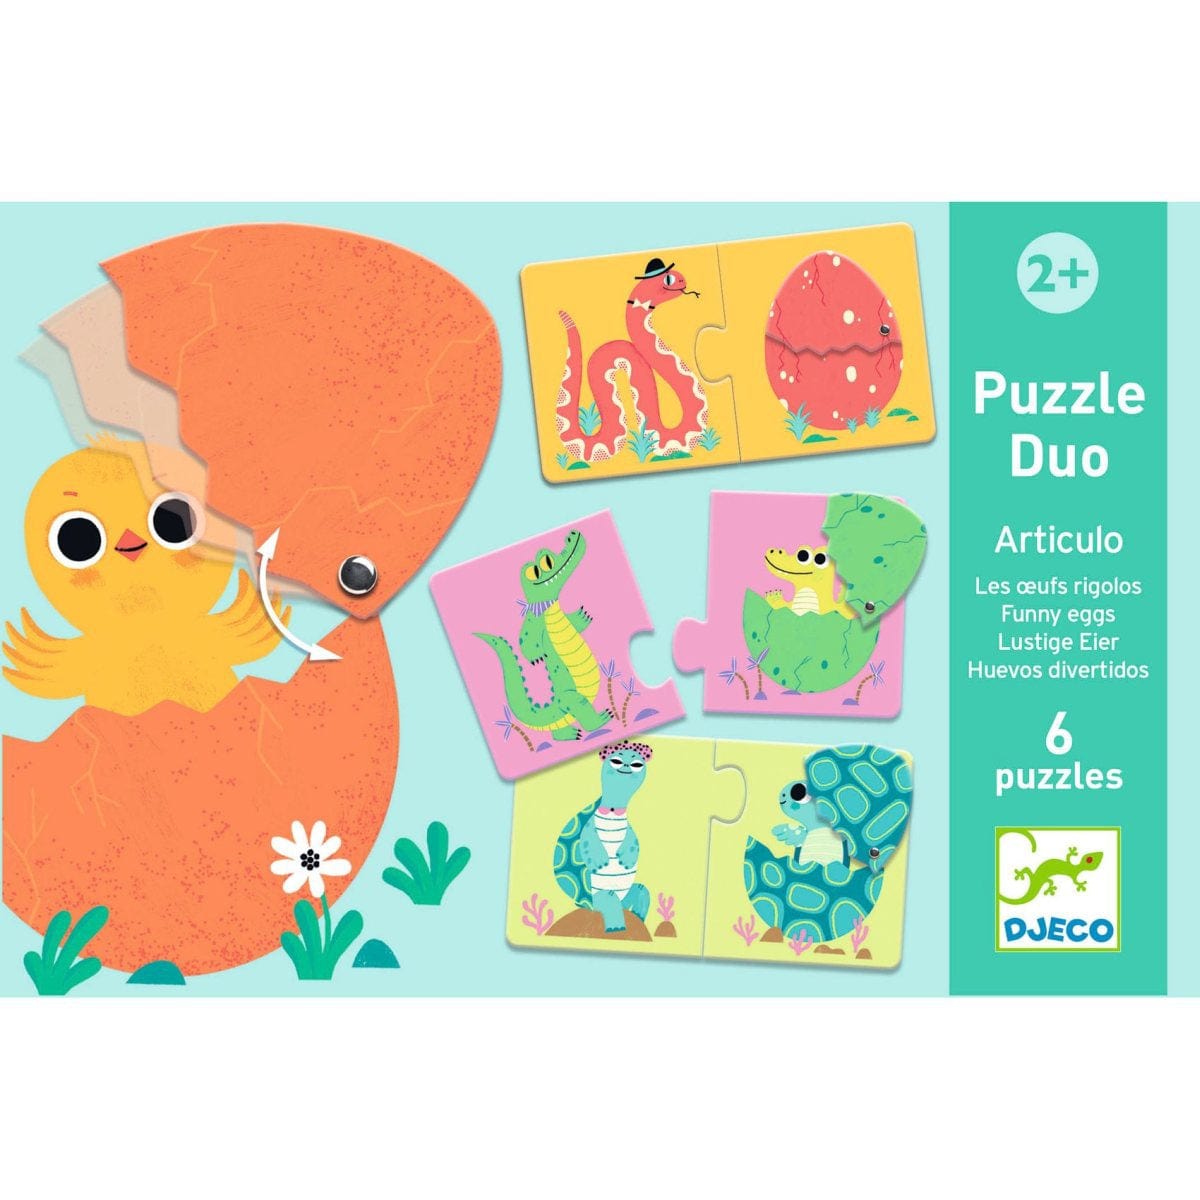 Djeco Puzzles y encajes Puzzle Duo huevos divertidos